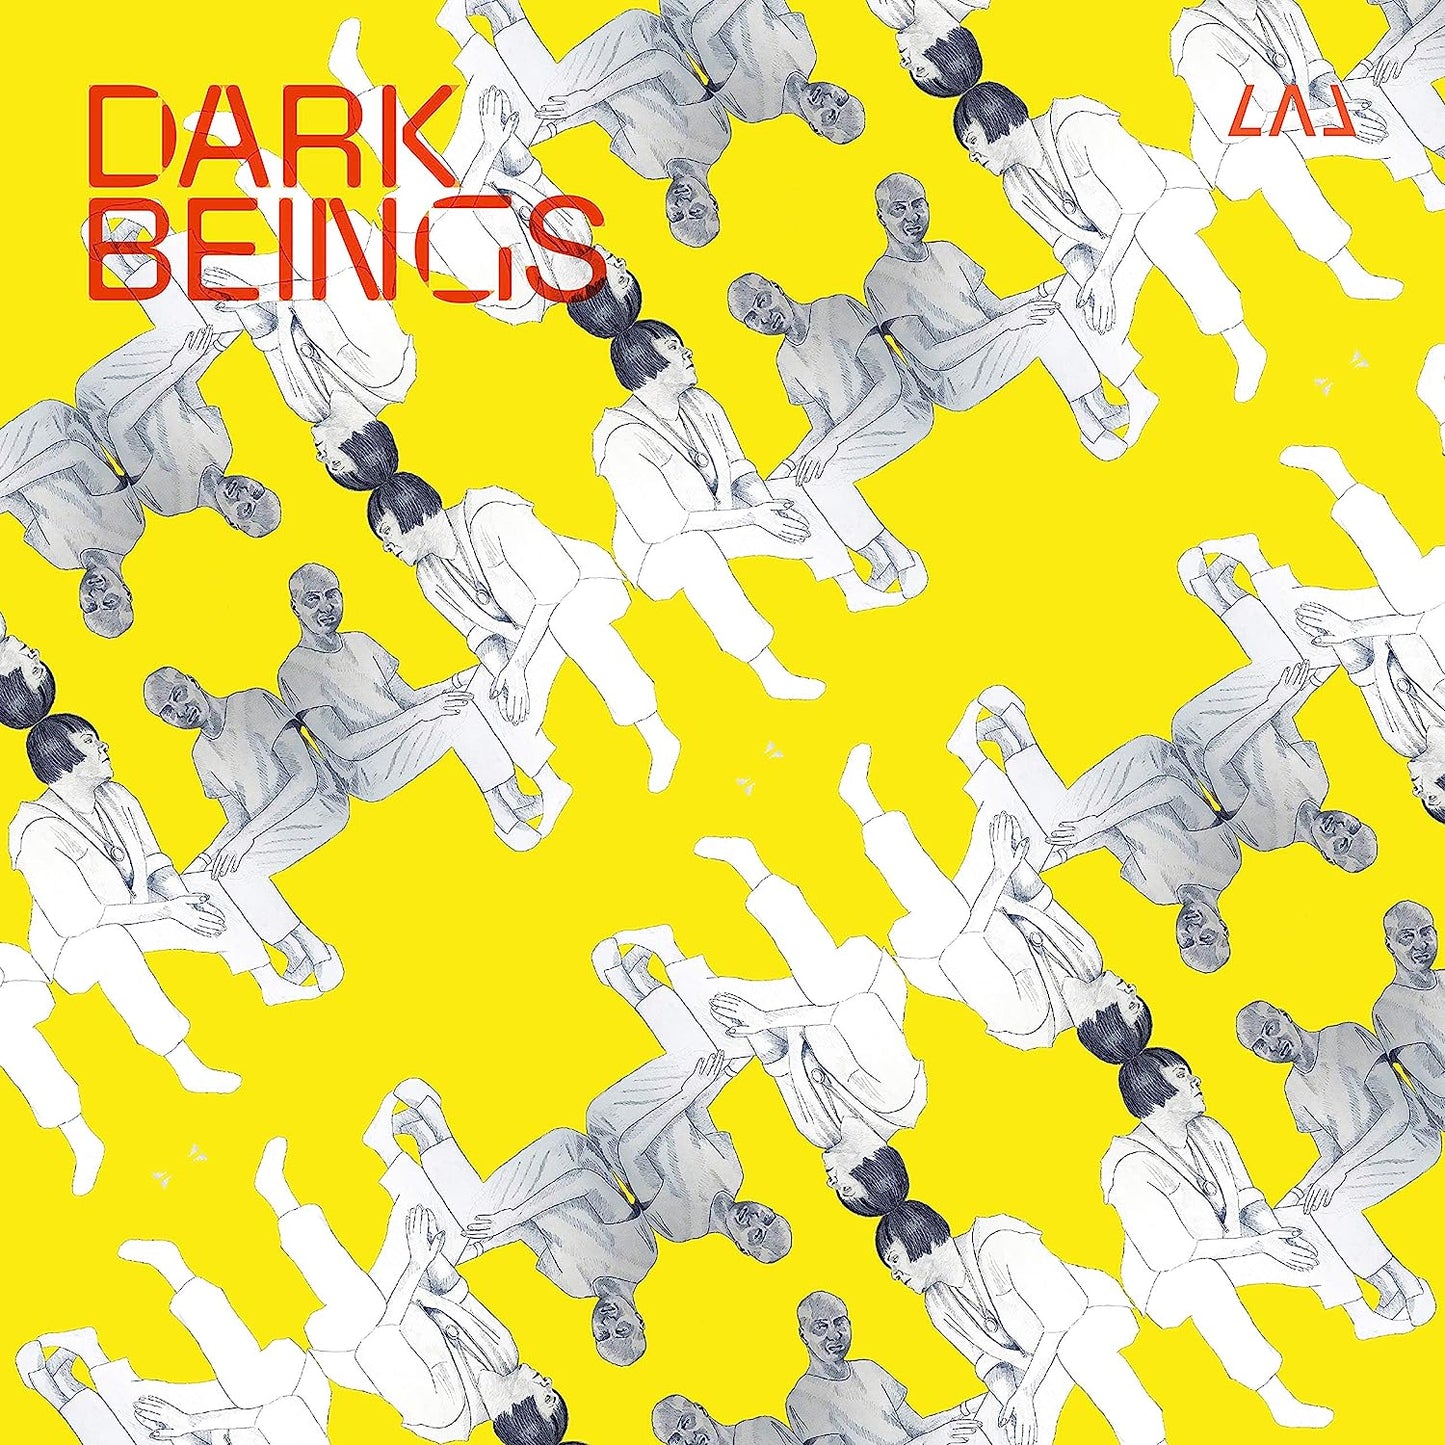 Lal/Dark Beings [LP]